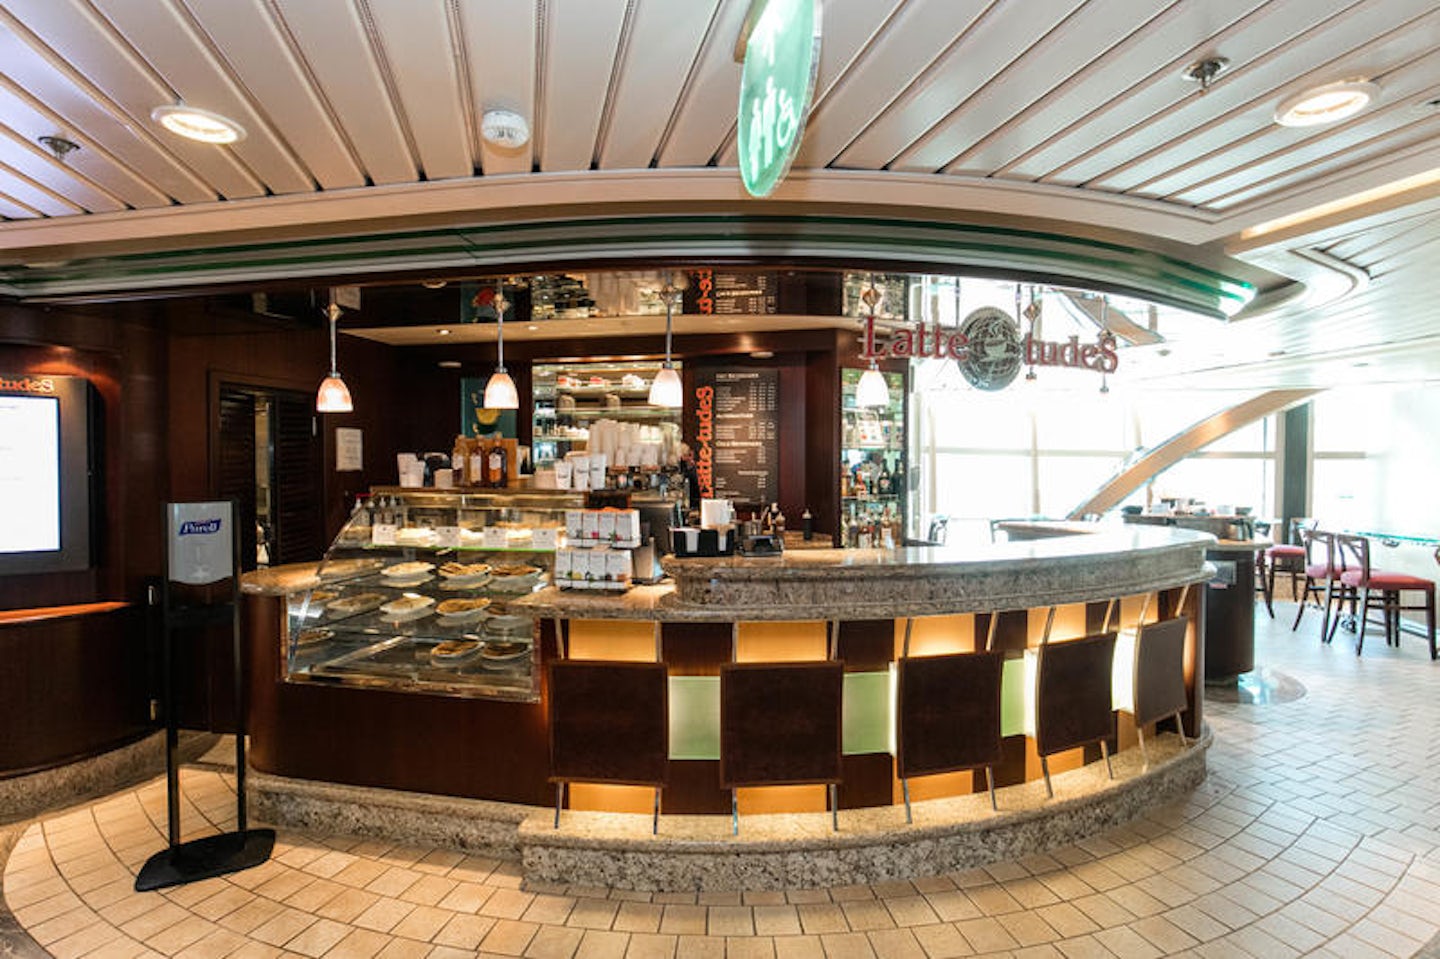 Cafe Latte-tudes on Jewel of the Seas